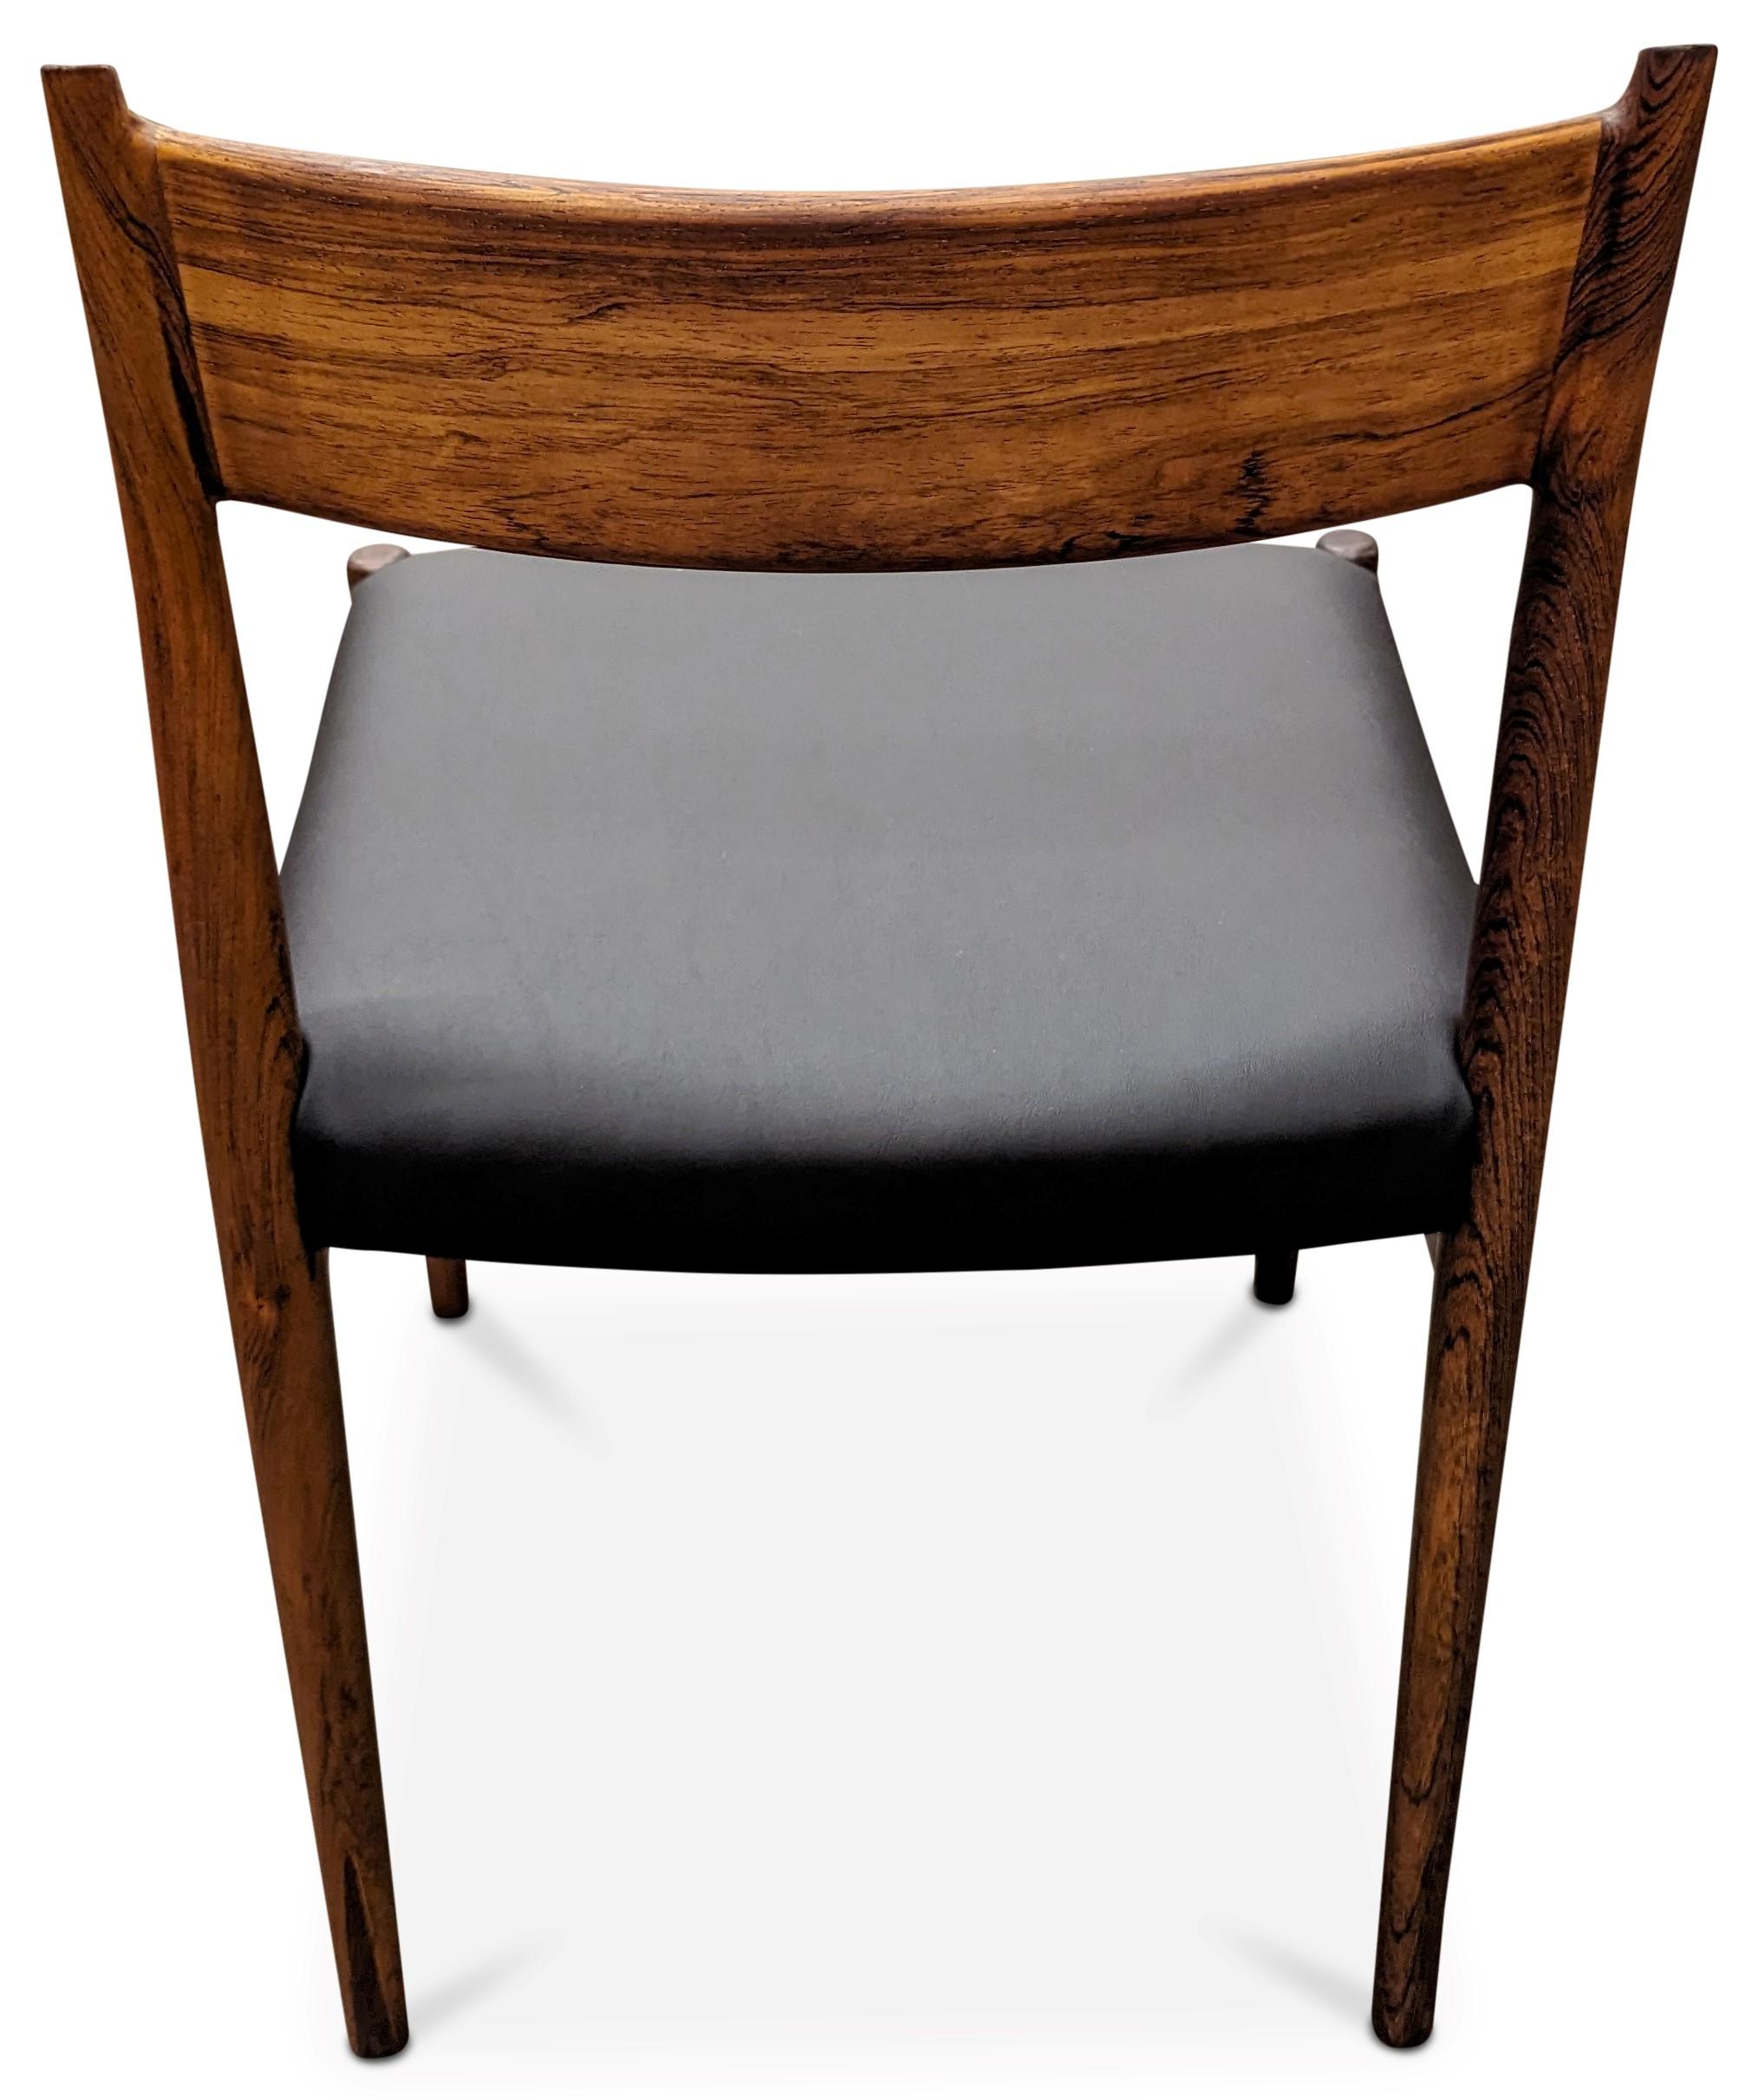 Vintage Danish Arne Vodder for Sibast Mobler Rosewood Dining Chair - 082316 2